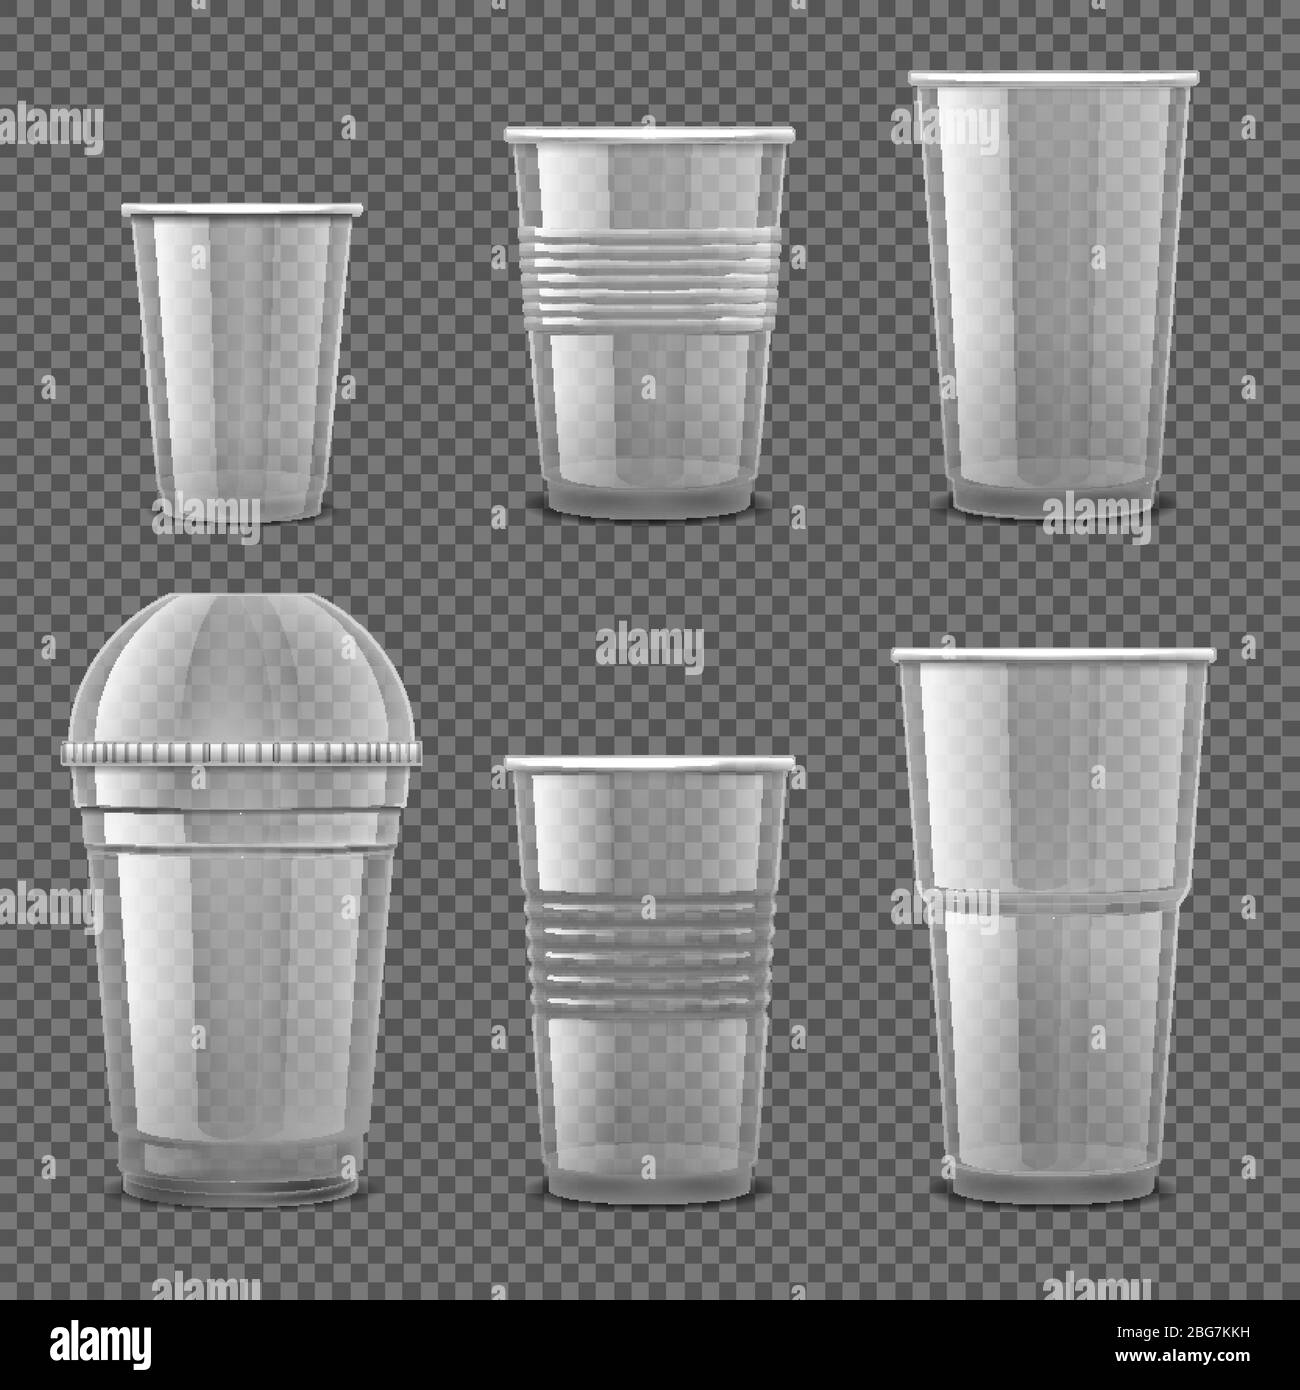 https://c8.alamy.com/compes/2bg7kkh/vasos-desechables-de-plastico-transparente-vacios-recipientes-para-bebidas-para-llevar-conjunto-de-vectores-aislados-ilustracion-de-recipiente-de-plastico-desechable-transparente-fo-2bg7kkh.jpg